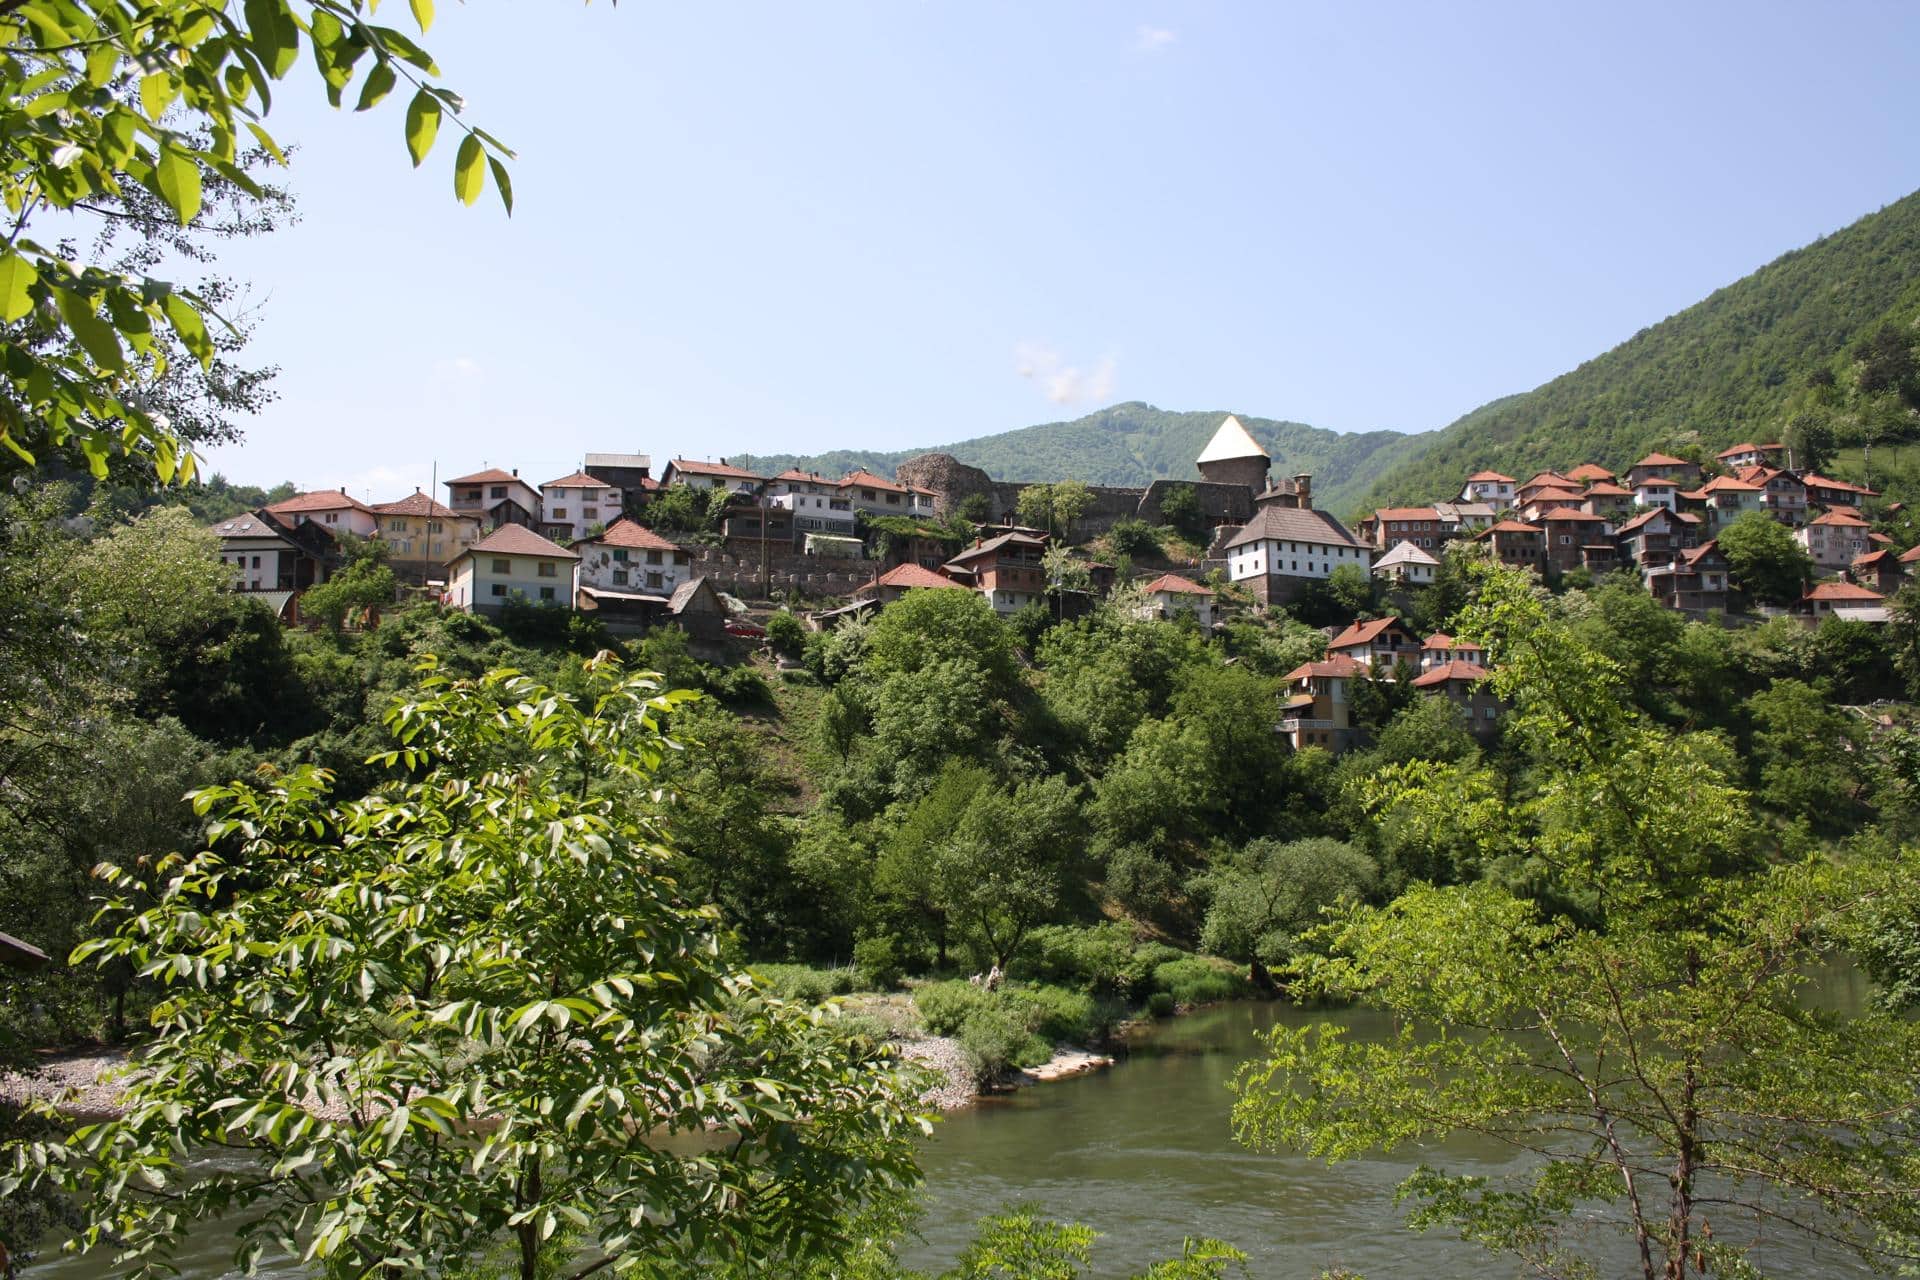 Srednjovekovno selo Vranduk u blizini Zenice na obali reke Bosne, nedaleko od Bilinog polja